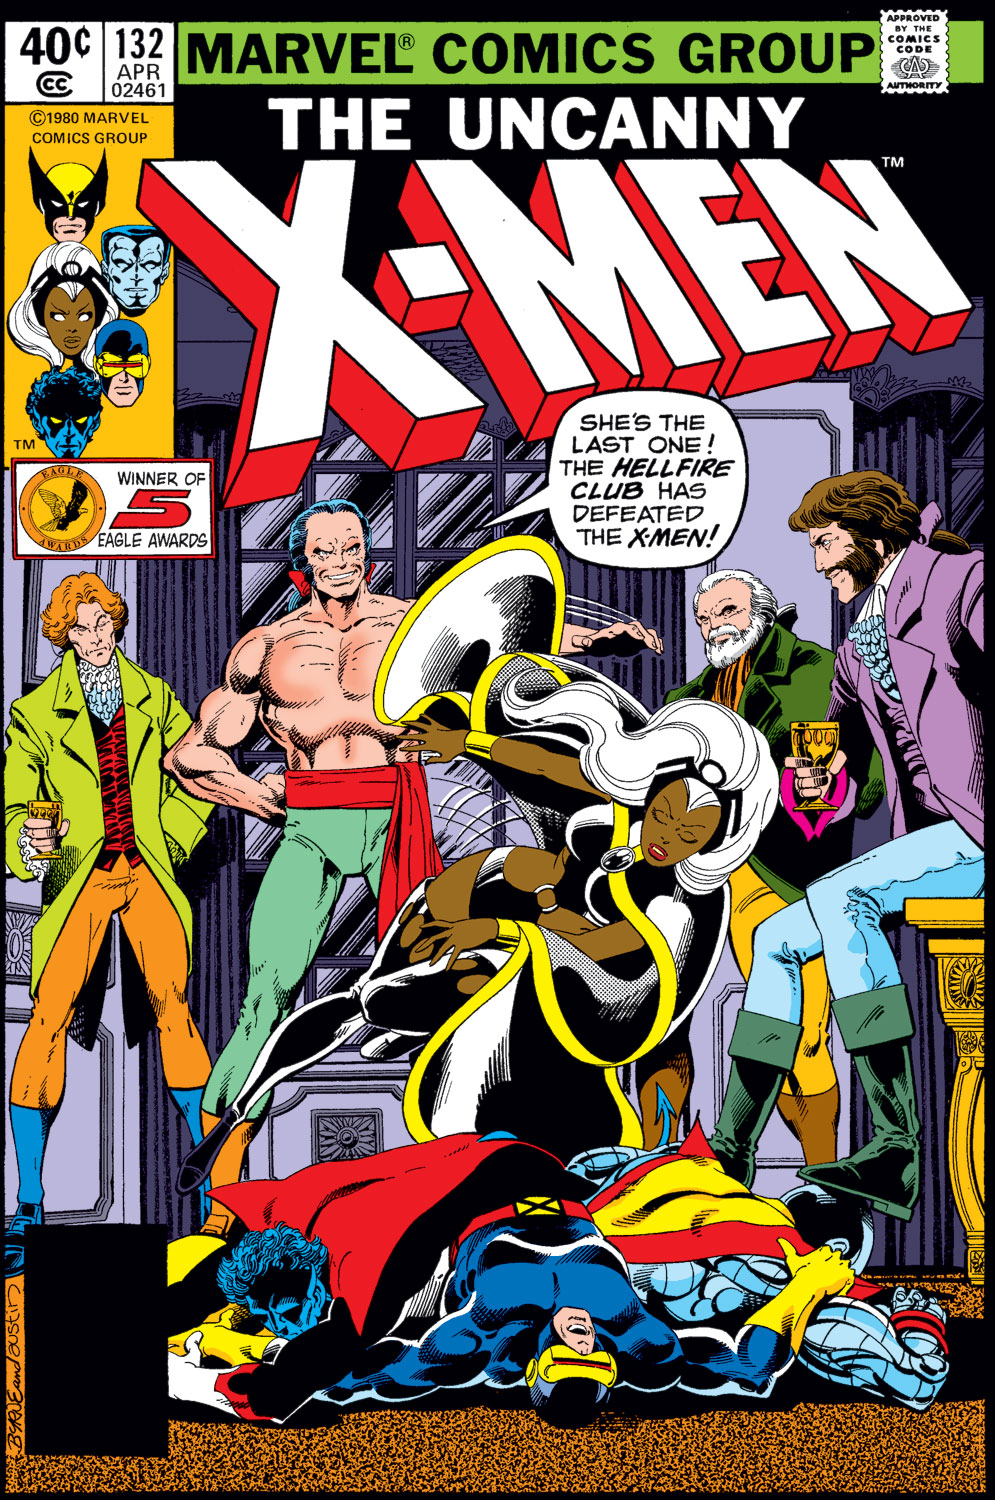 Uncanny X-Men #300 High Grade Marvel Comic Book PA13-89 